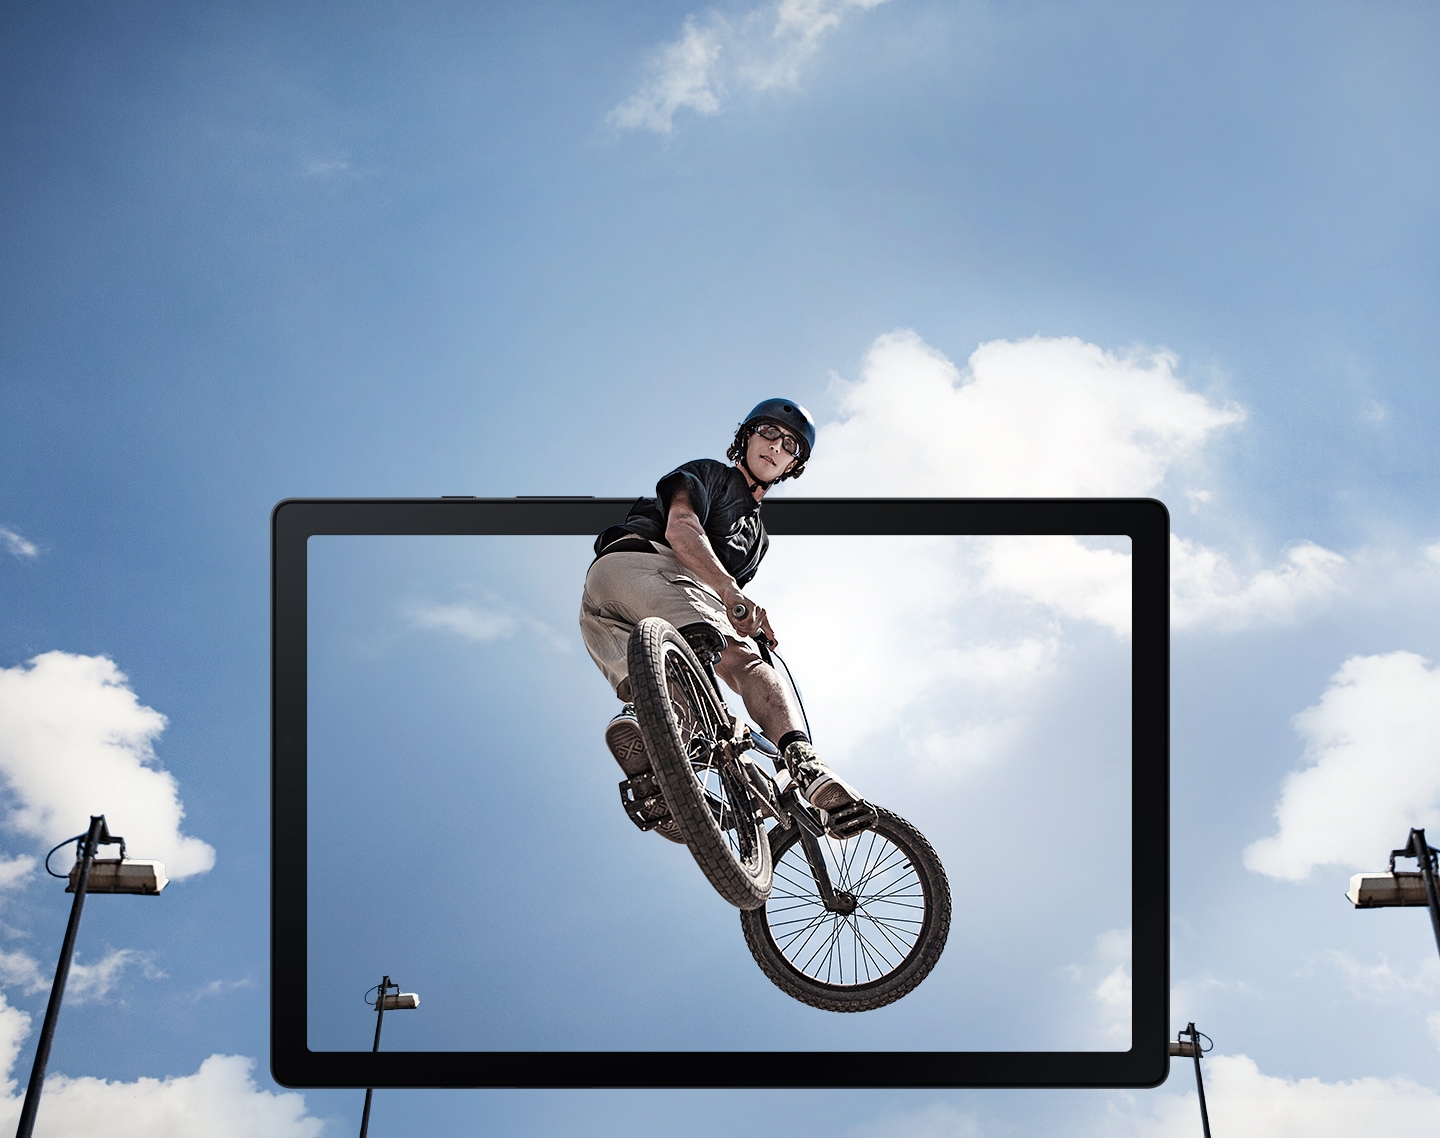 一個人正在騎極限單車進行跳躍的畫面從平板螢幕躍出。